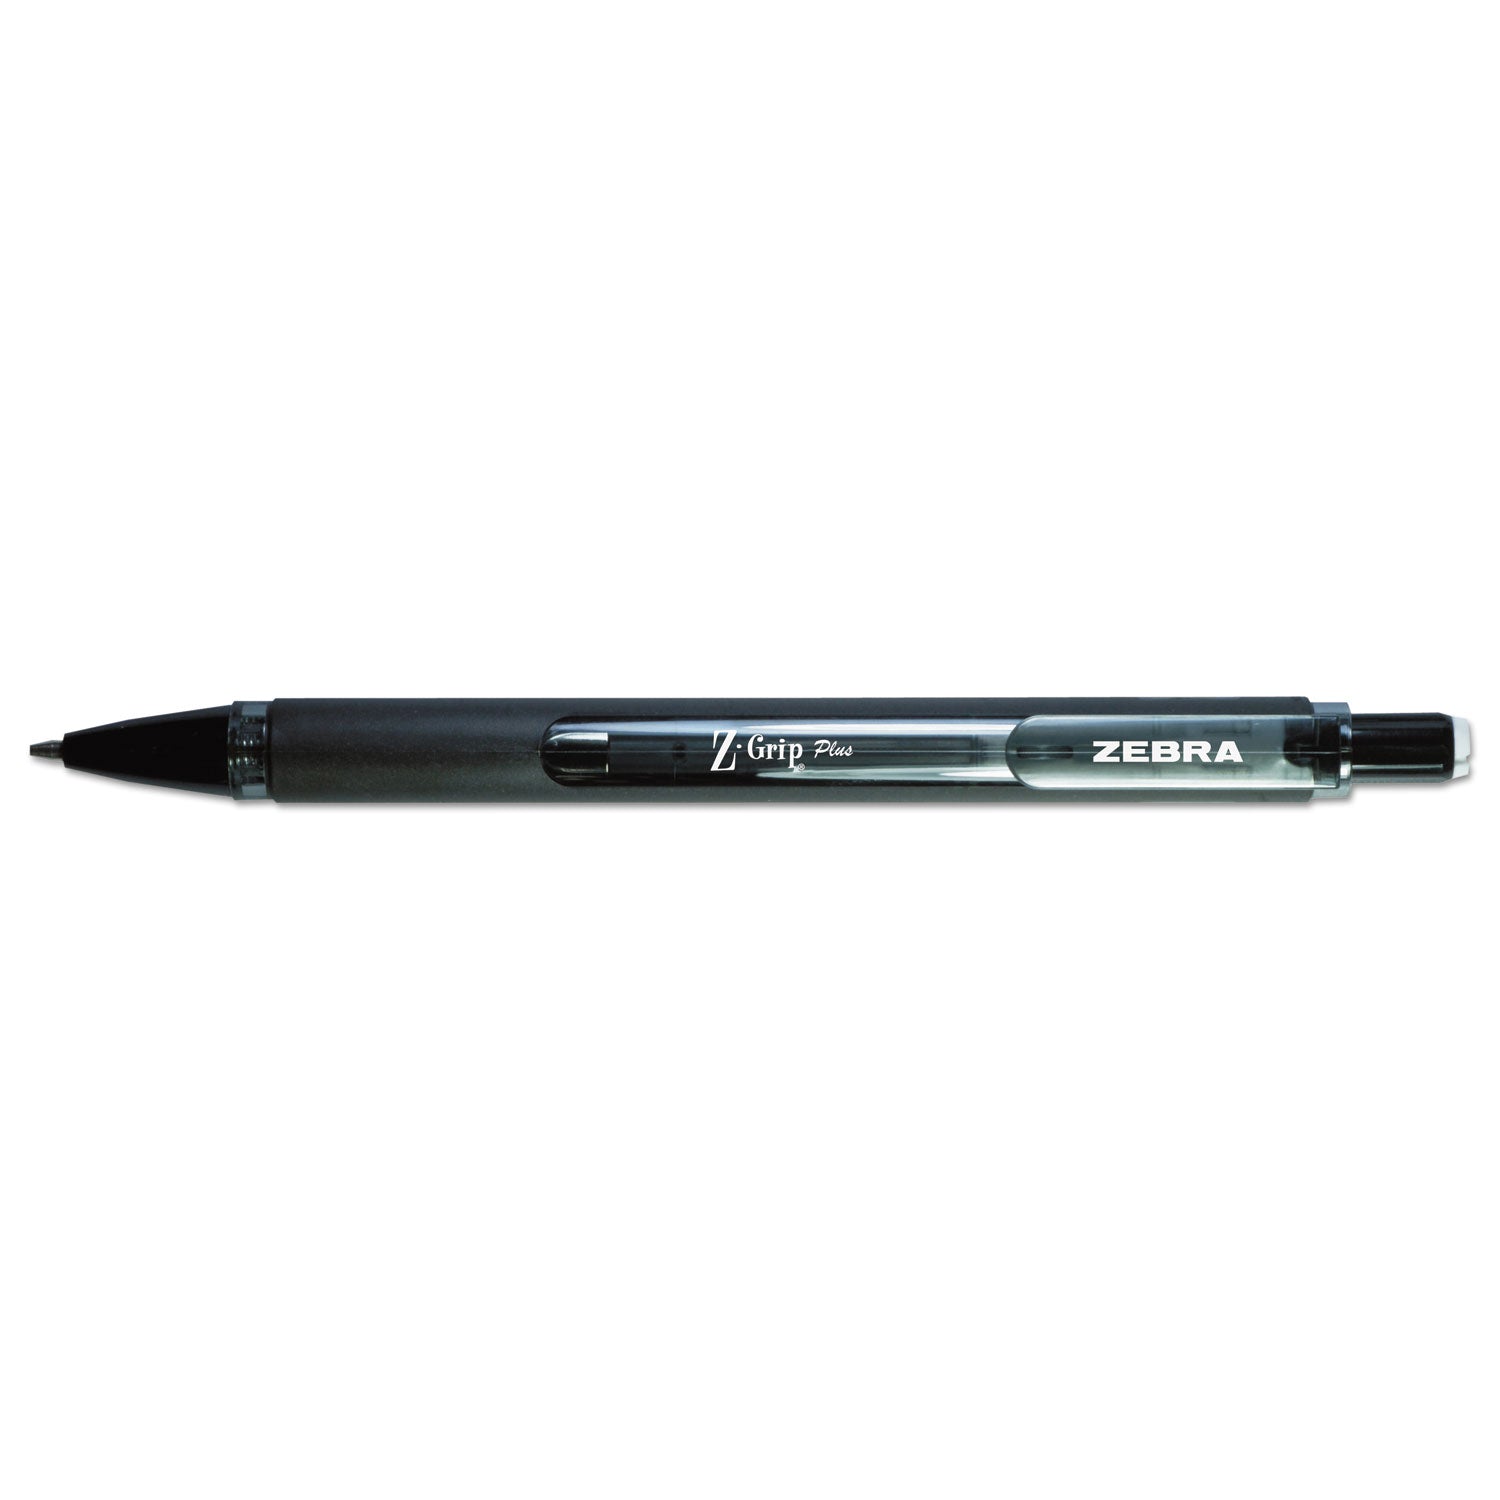 z-grip-plus-mechanical-pencil-07-mm-hb-#2-black-lead-assorted-barrel-colors-dozen_zeb55410 - 1